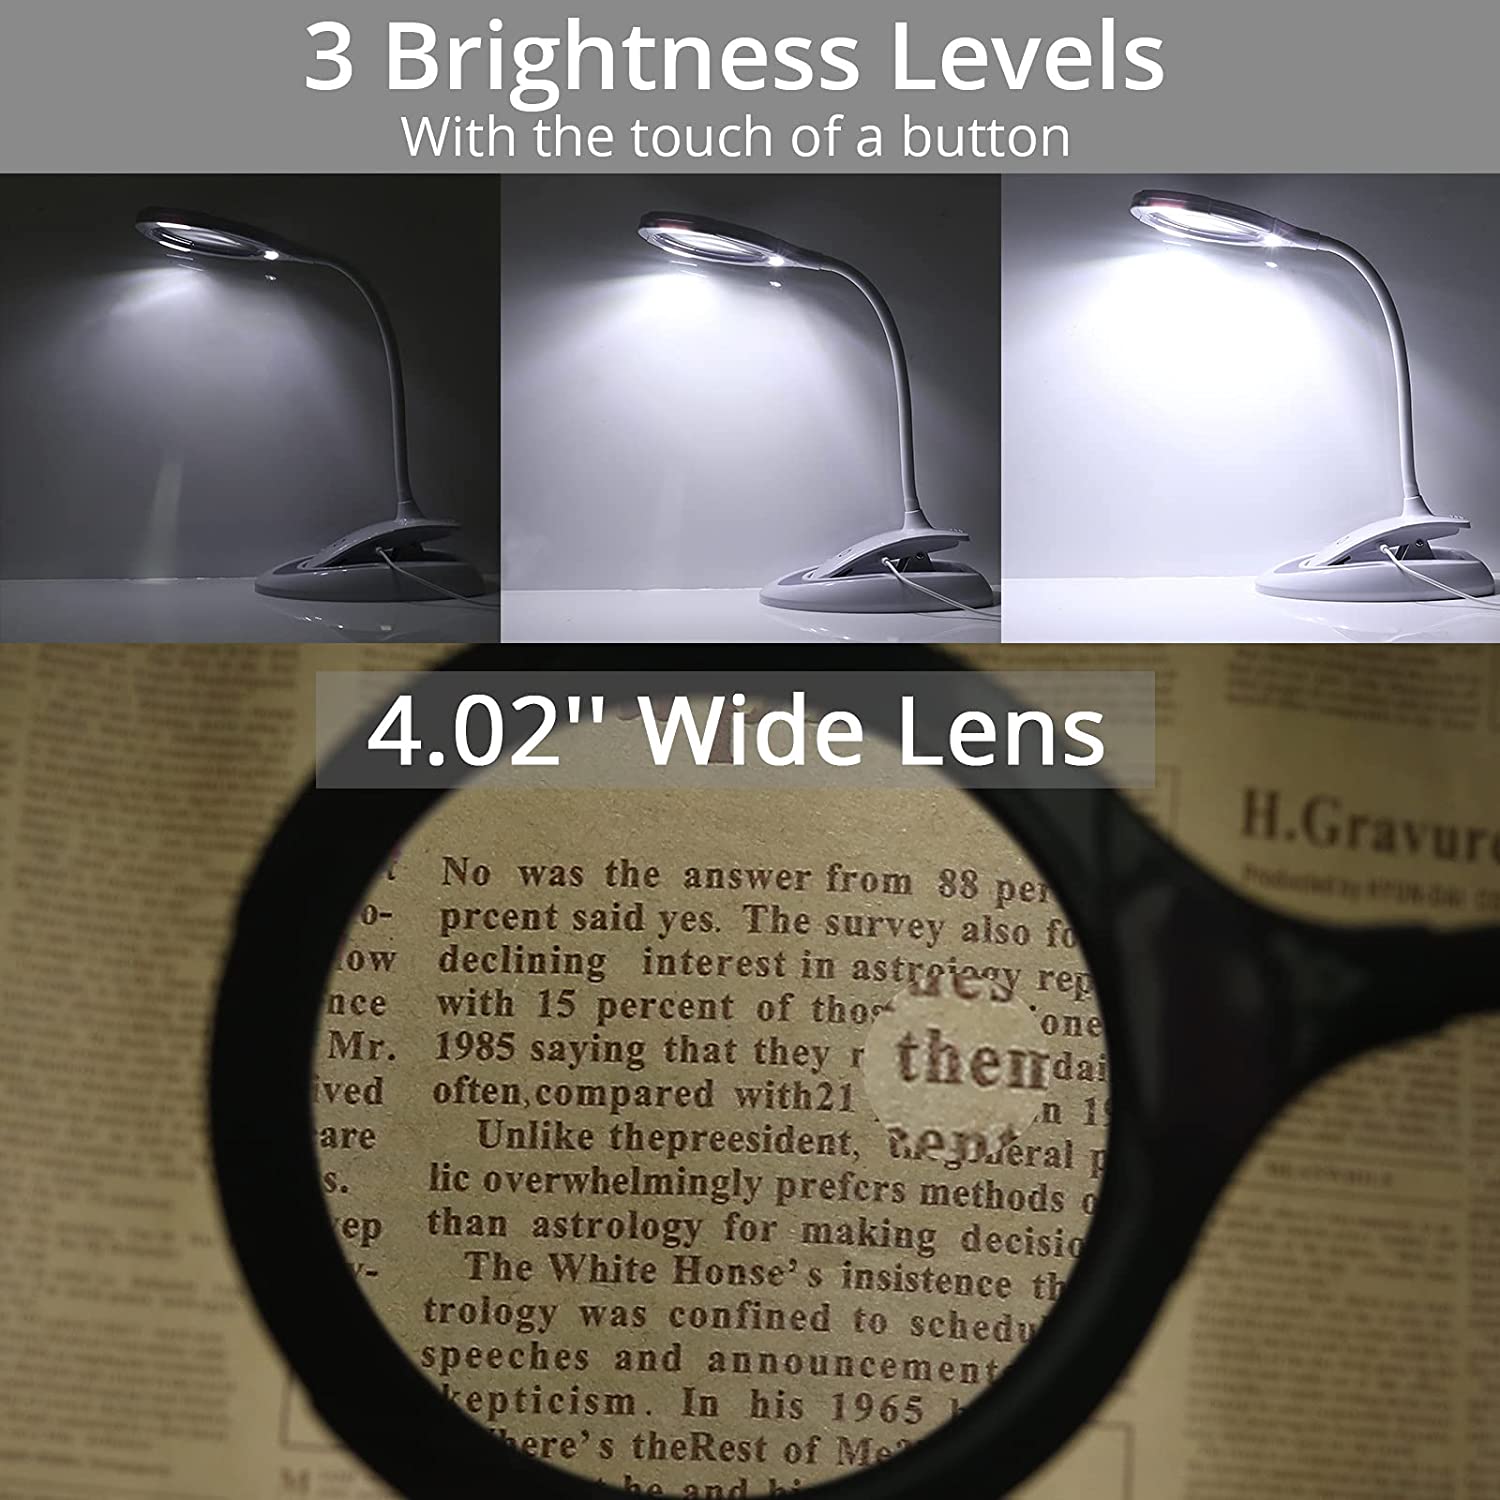 HOMGEN Hands Free Magnifier Lamp Rechargeable